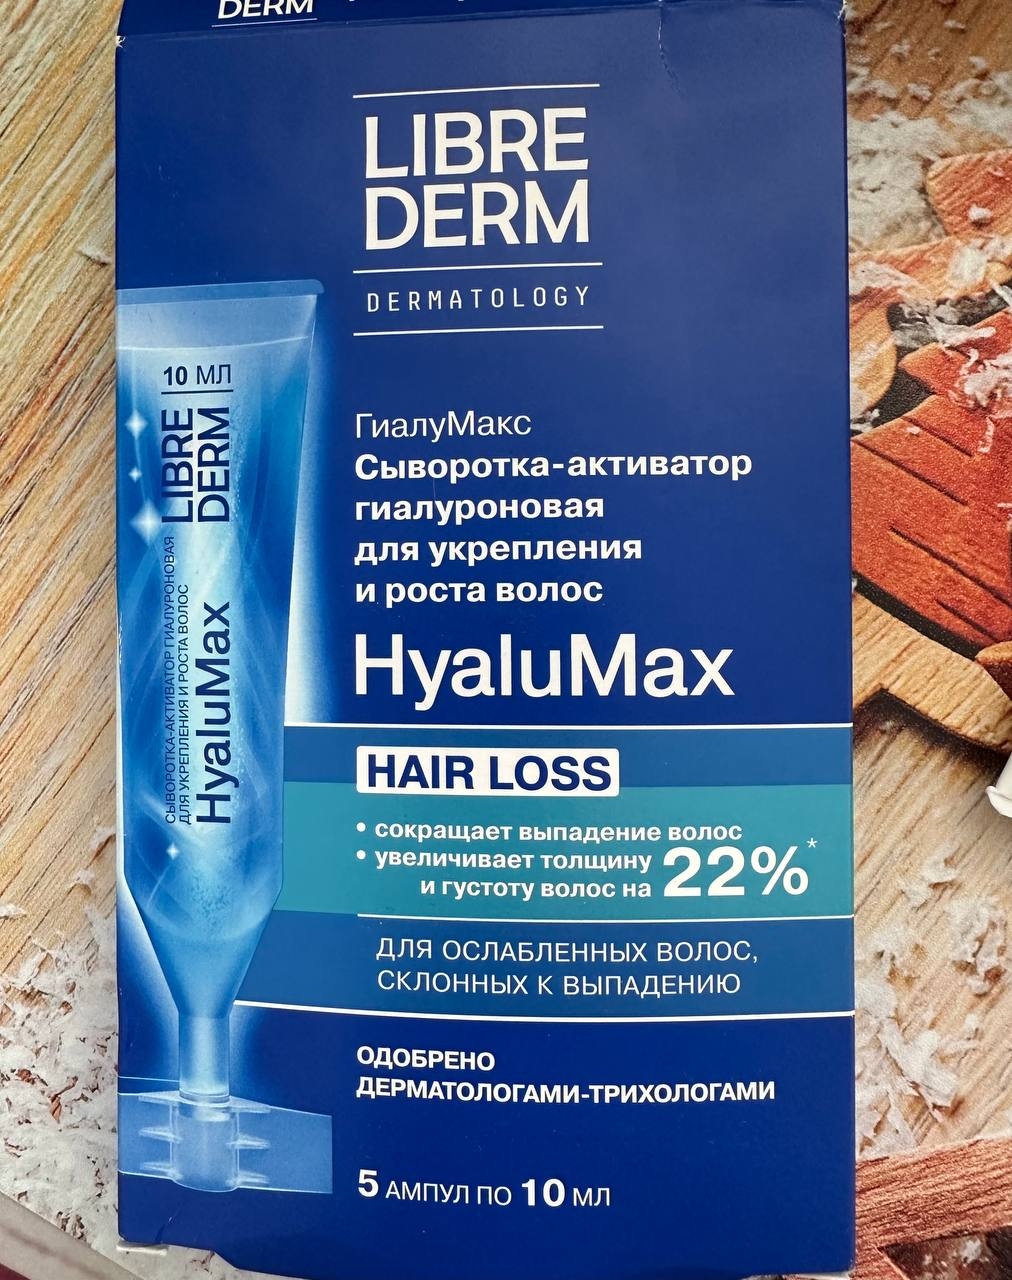 Librederm Hyalumax сыворотка-активатор гиалуроновая для укрепления и роста волос - Сыворотка HYALUMAX - экстренная помощь для волос.